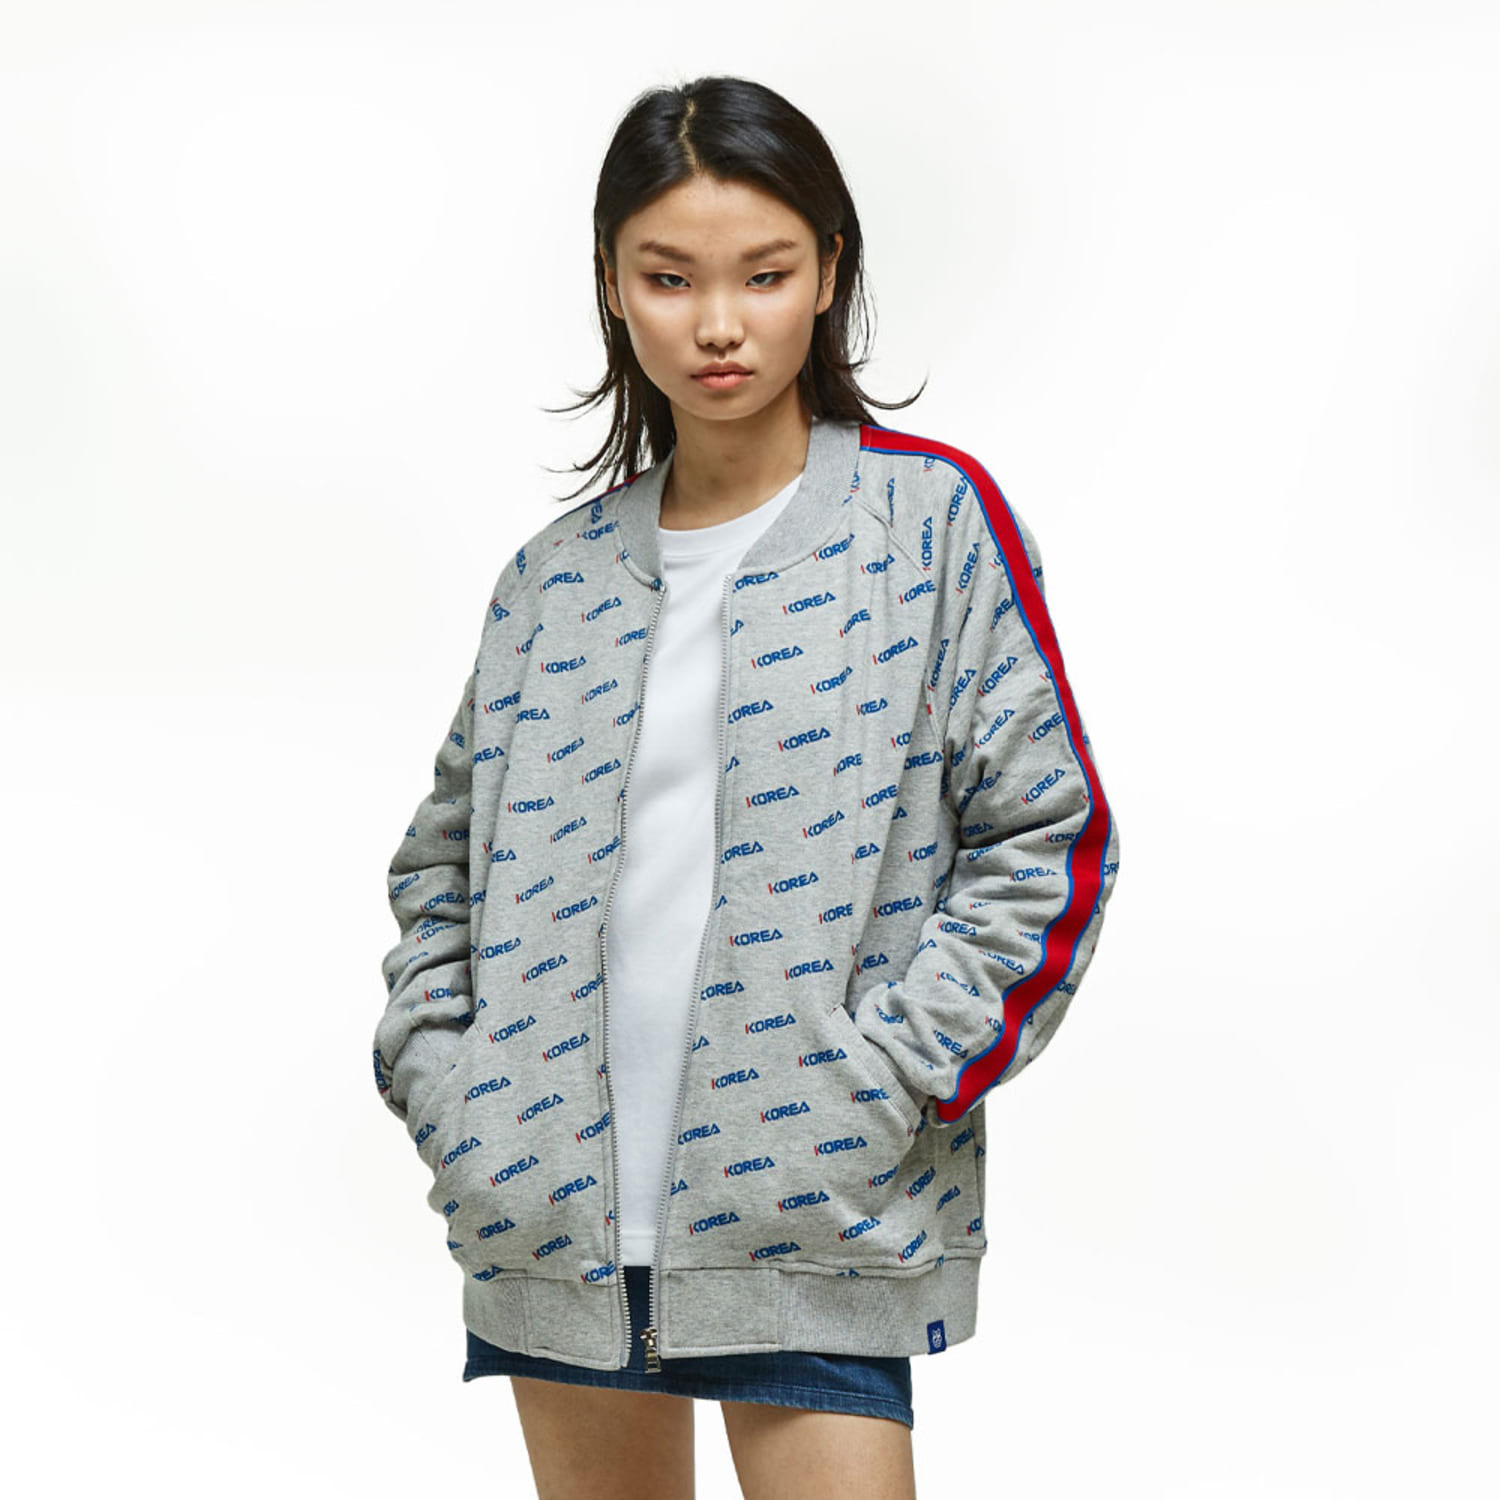 코리아 패턴 자켓 Korea pattern bomber jacket (Gray)